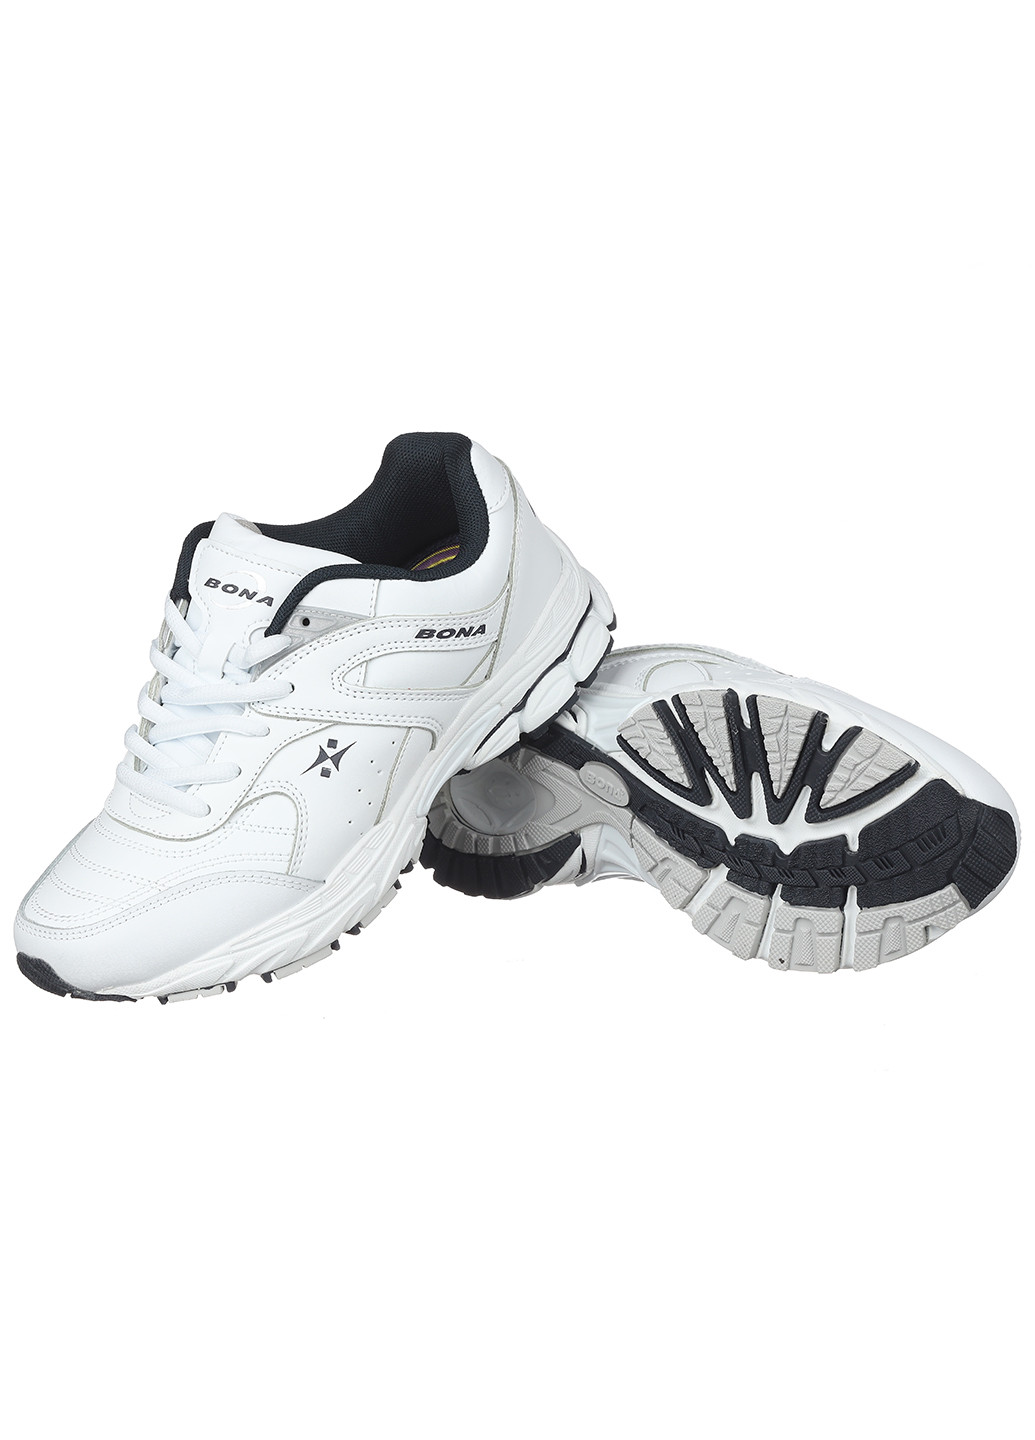 Белые демисезонные женские кроссовки 806a-2 Bona